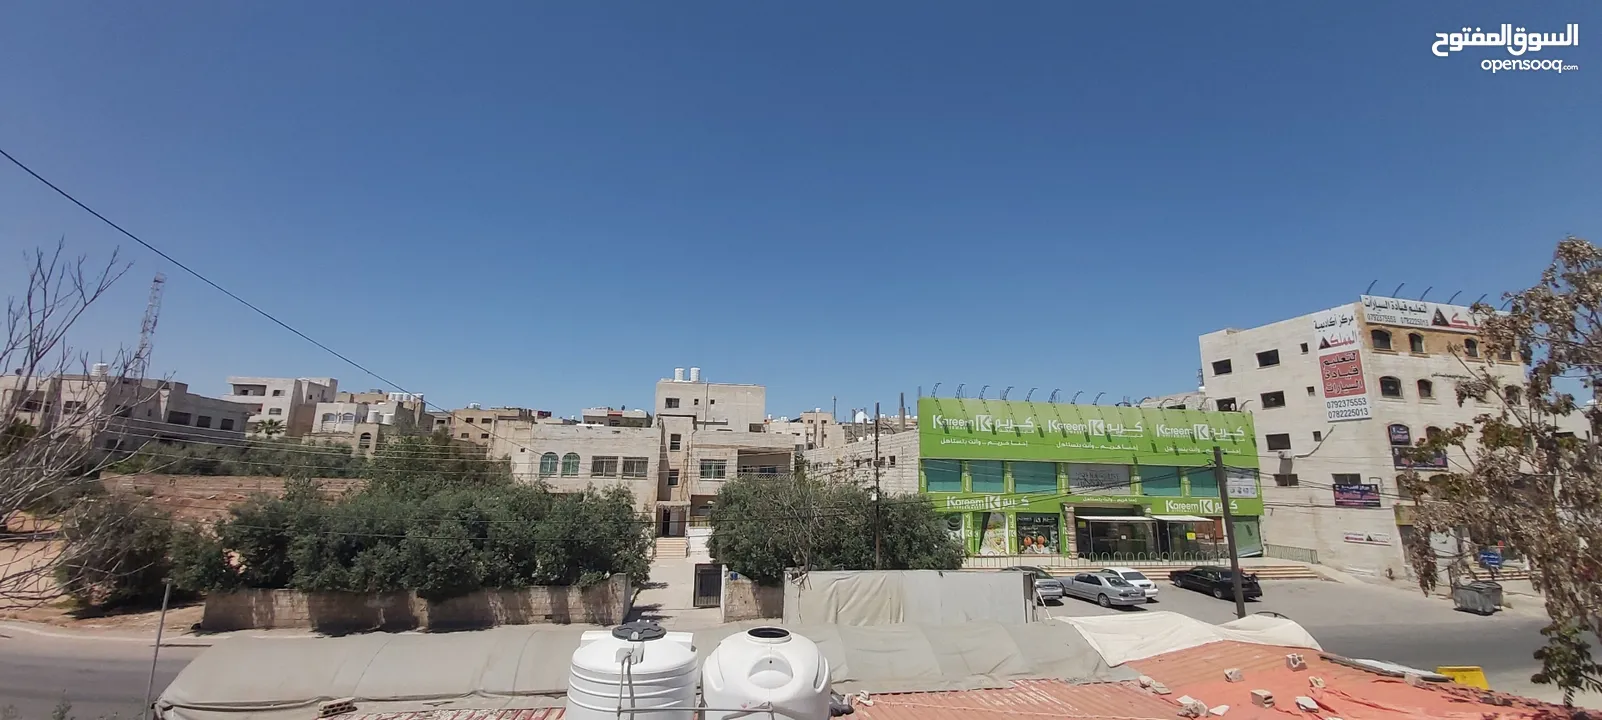 ارض تجاري للبيع في افضل موقع حيوي في منطقة خريبة السوق جنوب عمان